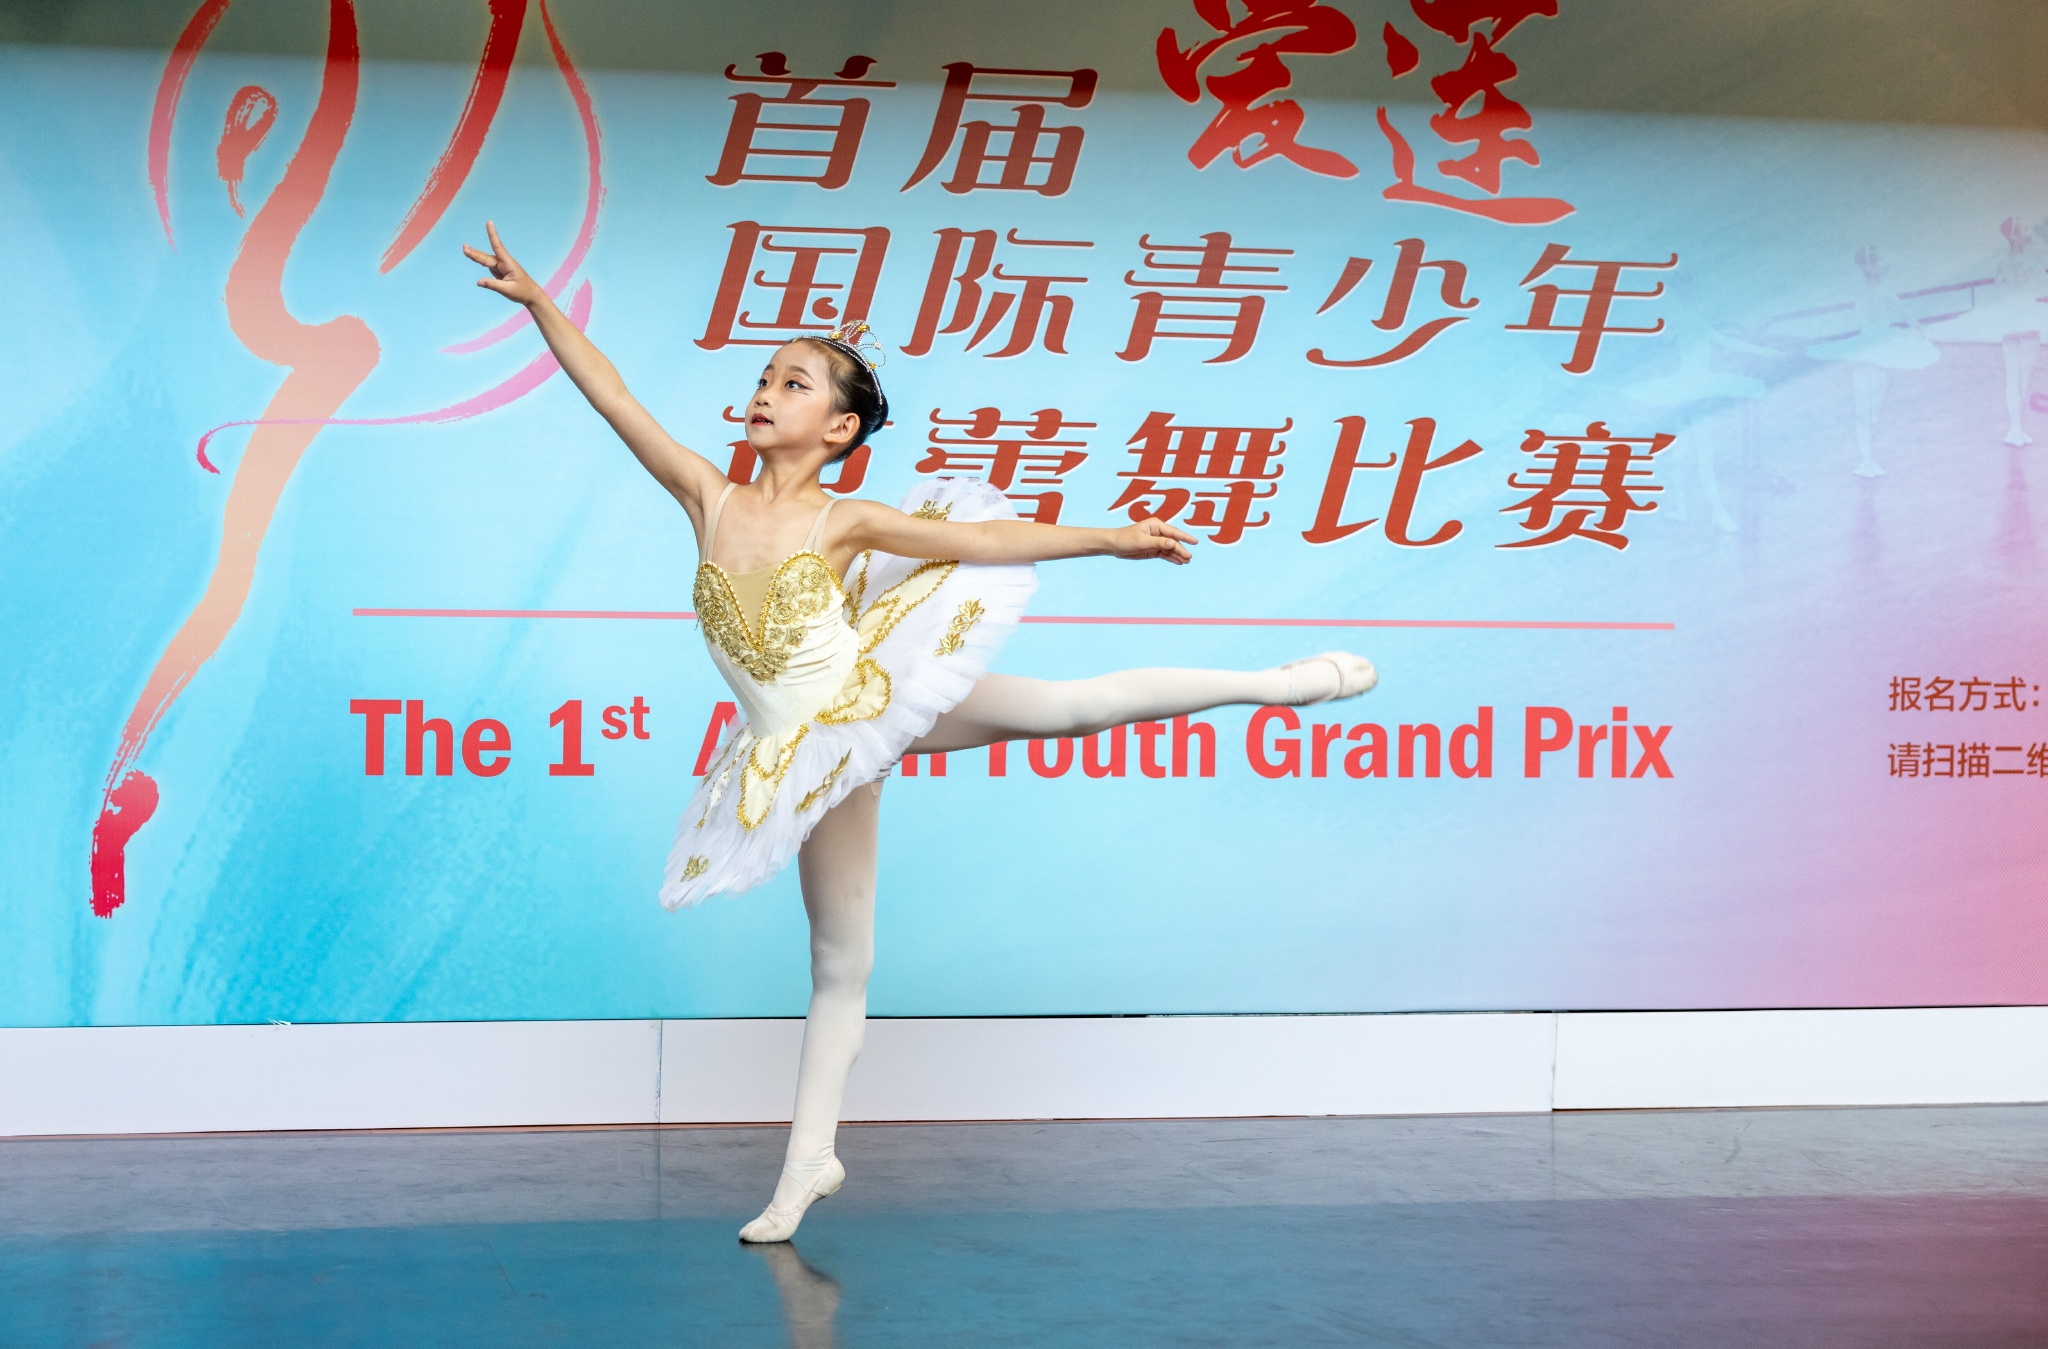 二十一世纪芭蕾舞在中国——中央芭蕾舞团团长、艺术总监冯英_演出_疫情_红色娘子军